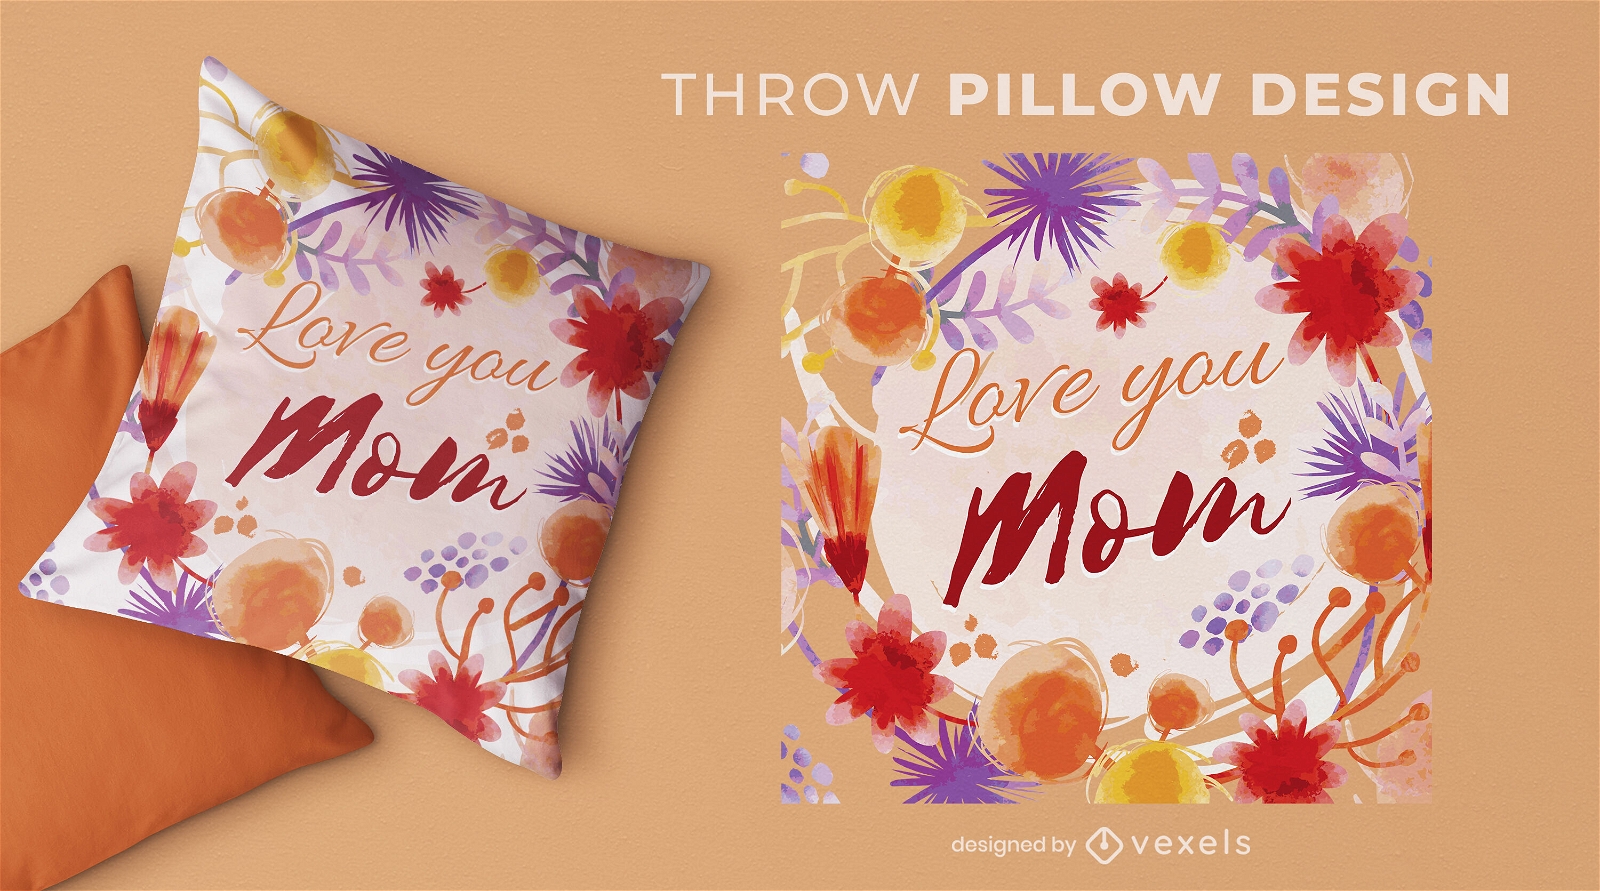 Love you mom throw pillow design